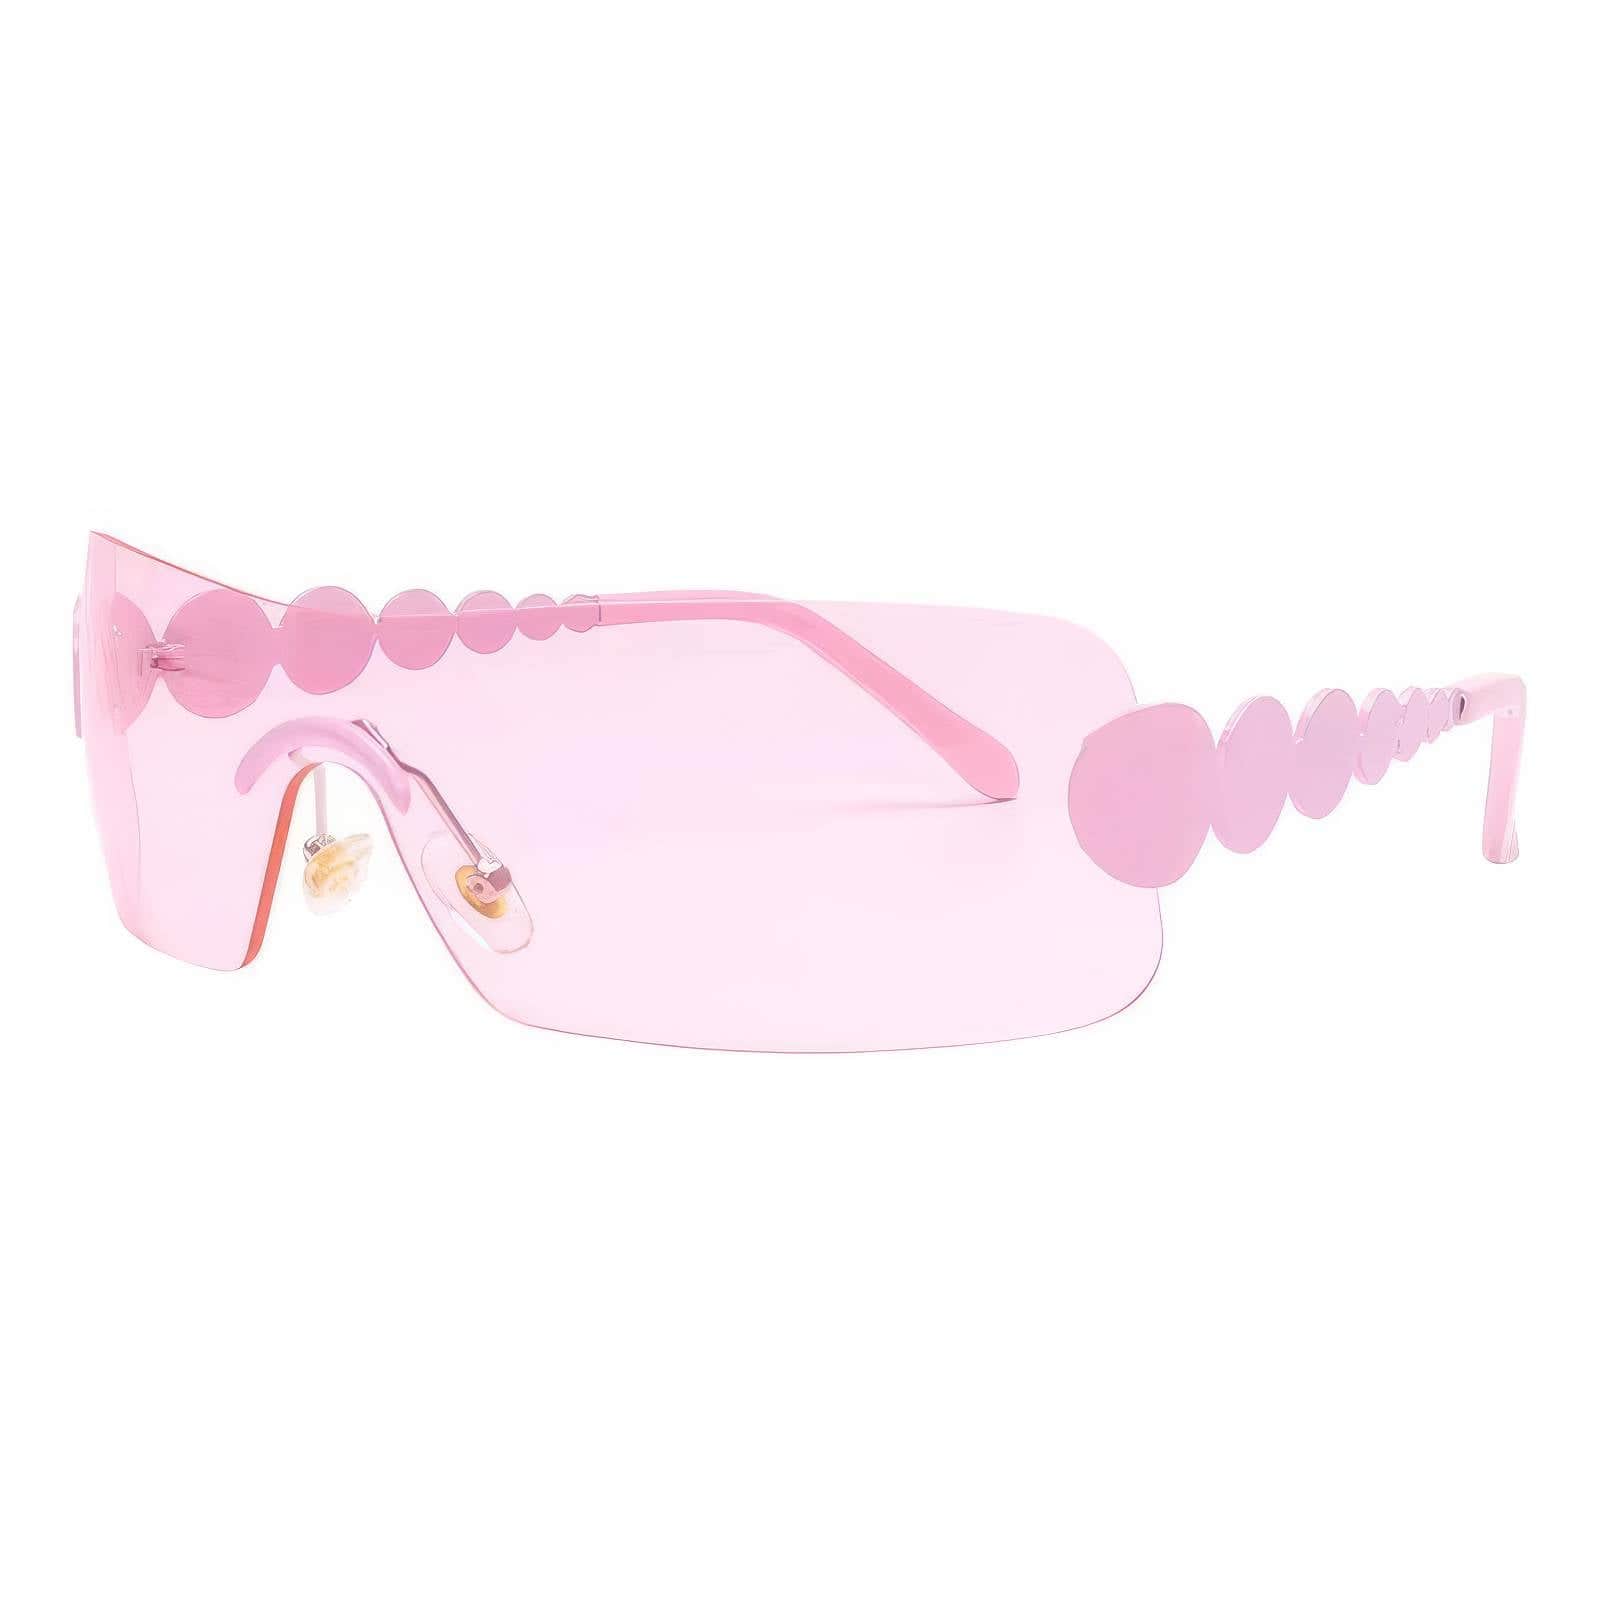 Fashion Wrap Around Eyewear Light Pink / Resin